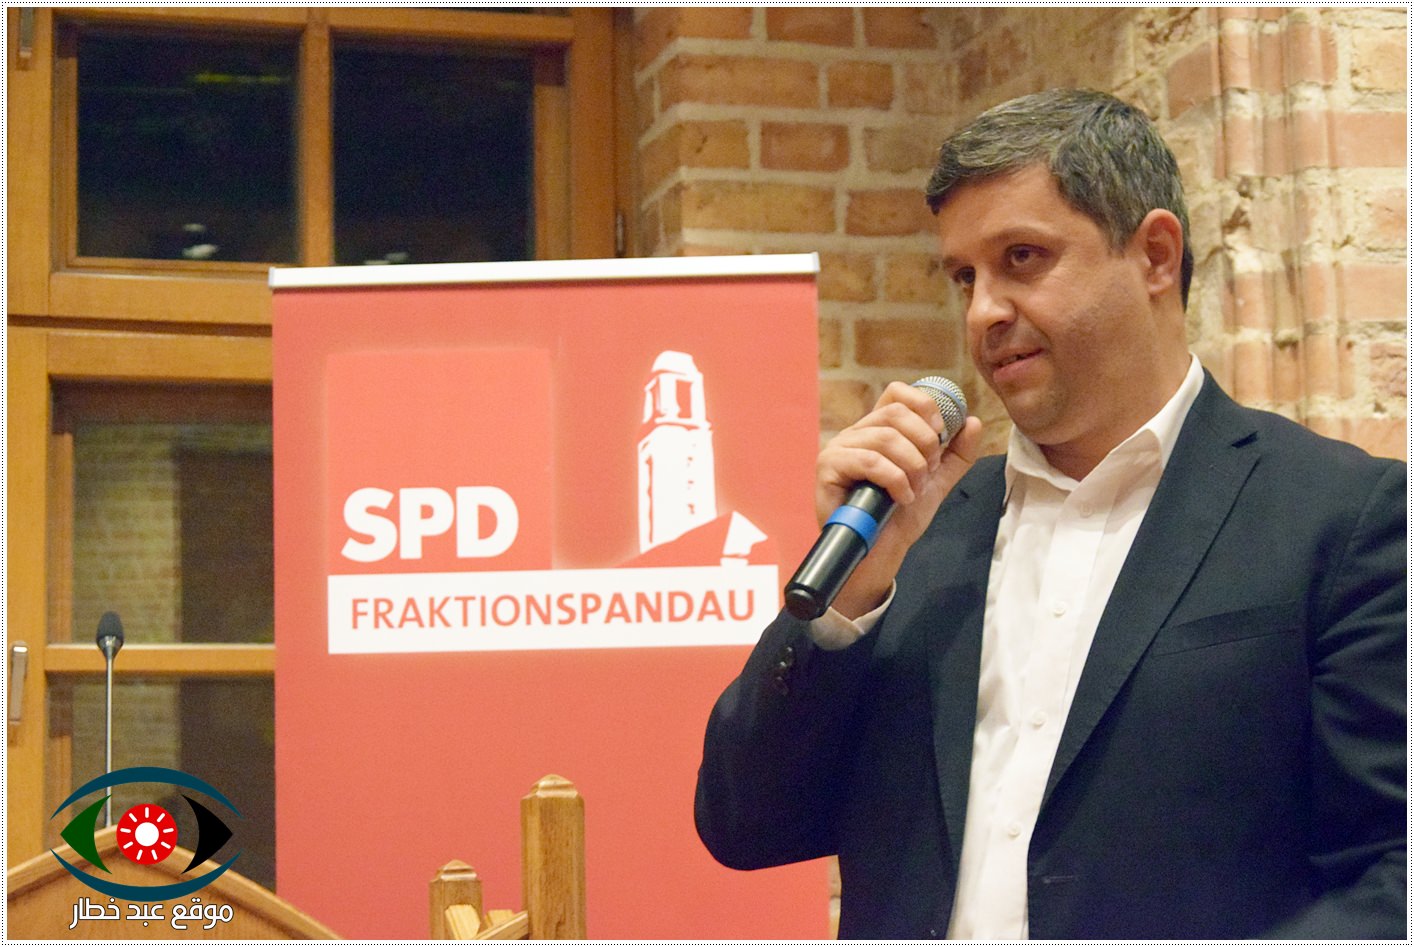 الحزب الاشتراكي الديمقراطي/ SPD في افتتاح احتفال موسم الربيع في منطقة الشبنداو في برلين